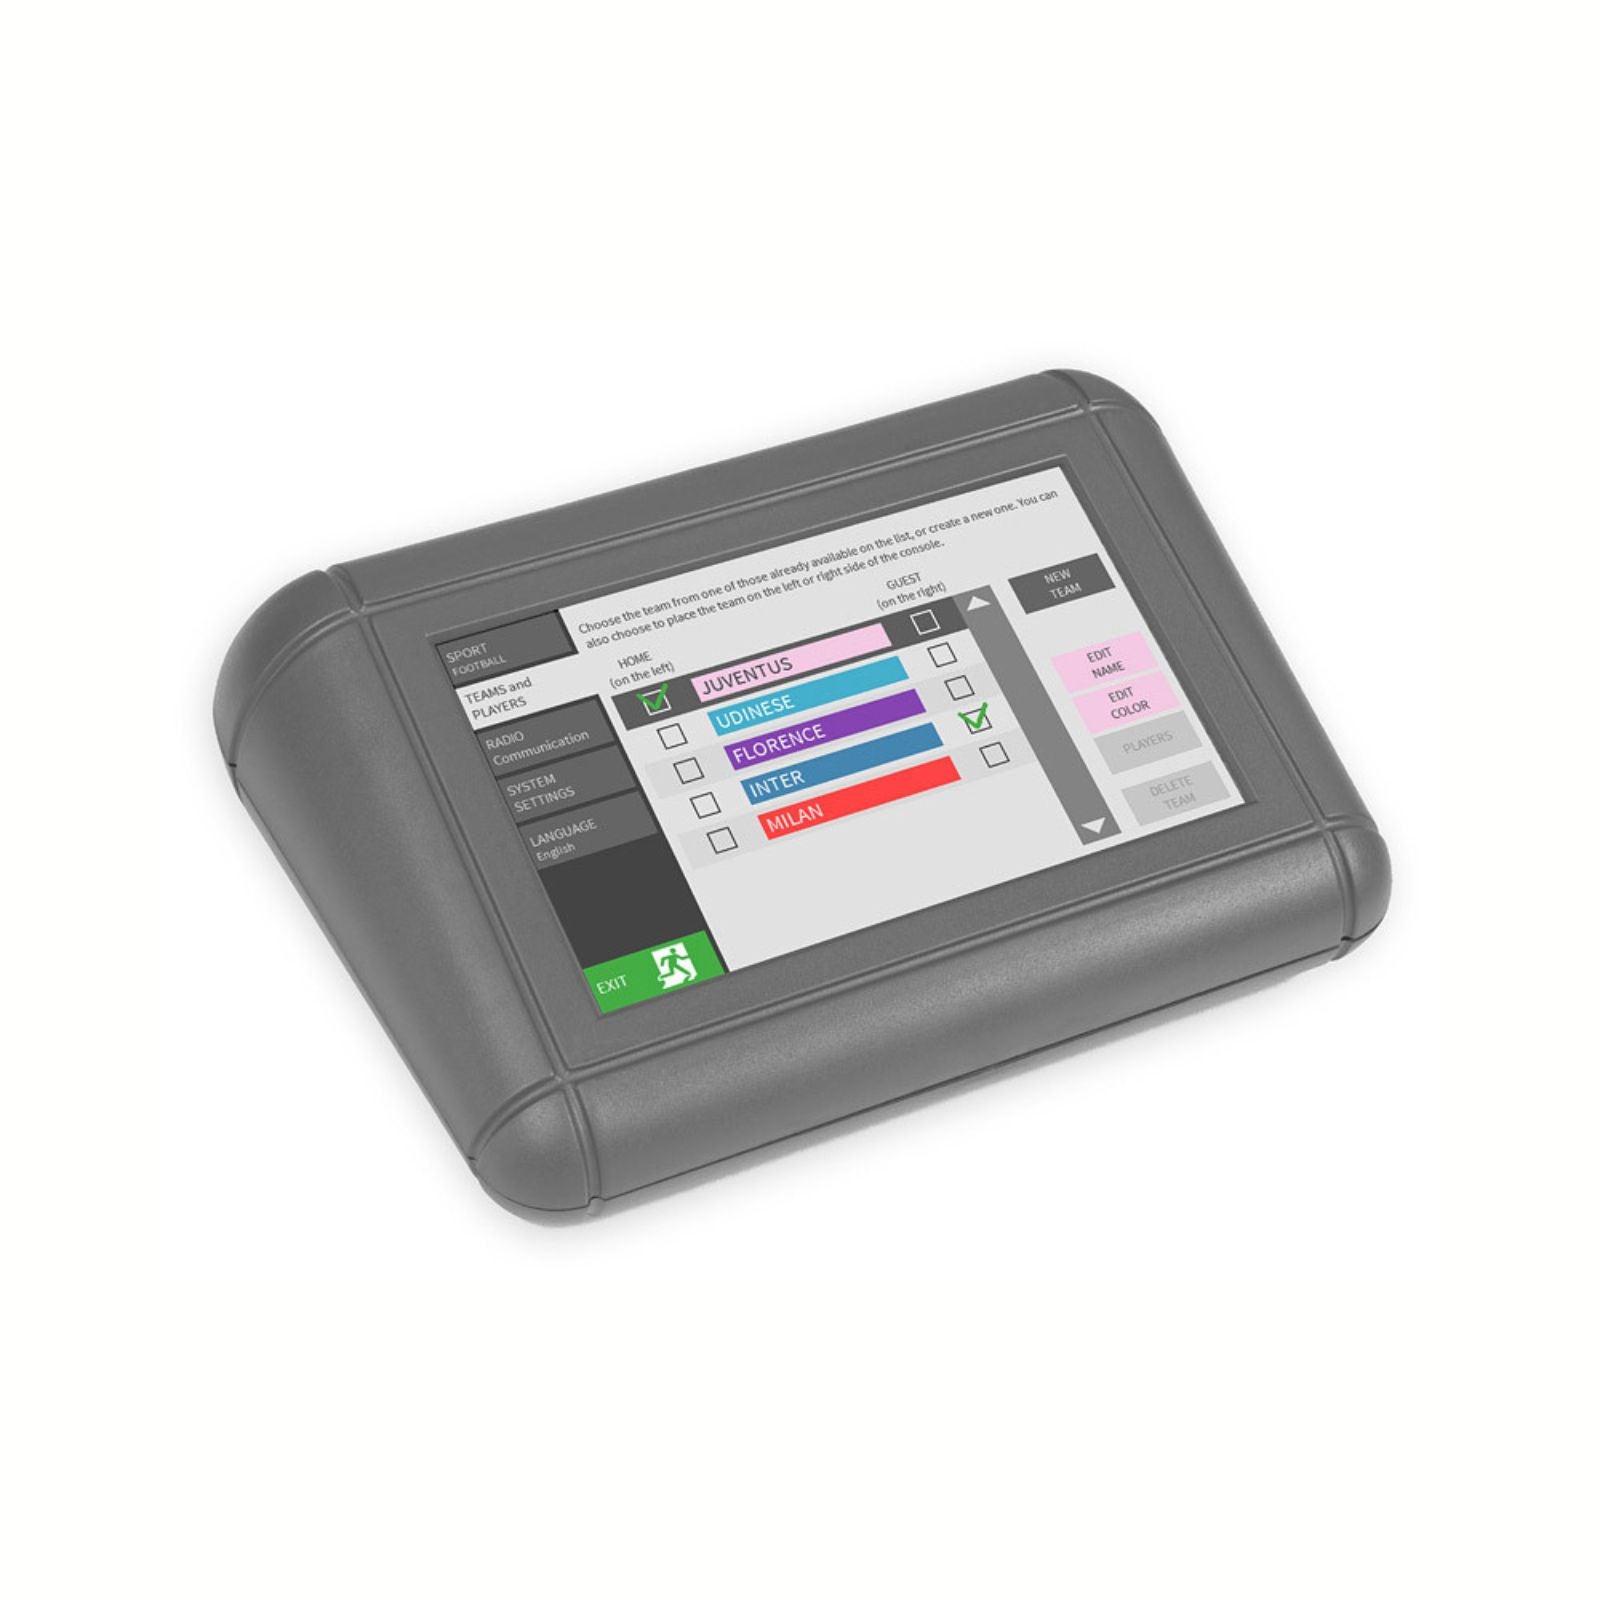 Console di Controllo Touchscreen Multisport per Tabelloni Segnapunti Elettronici